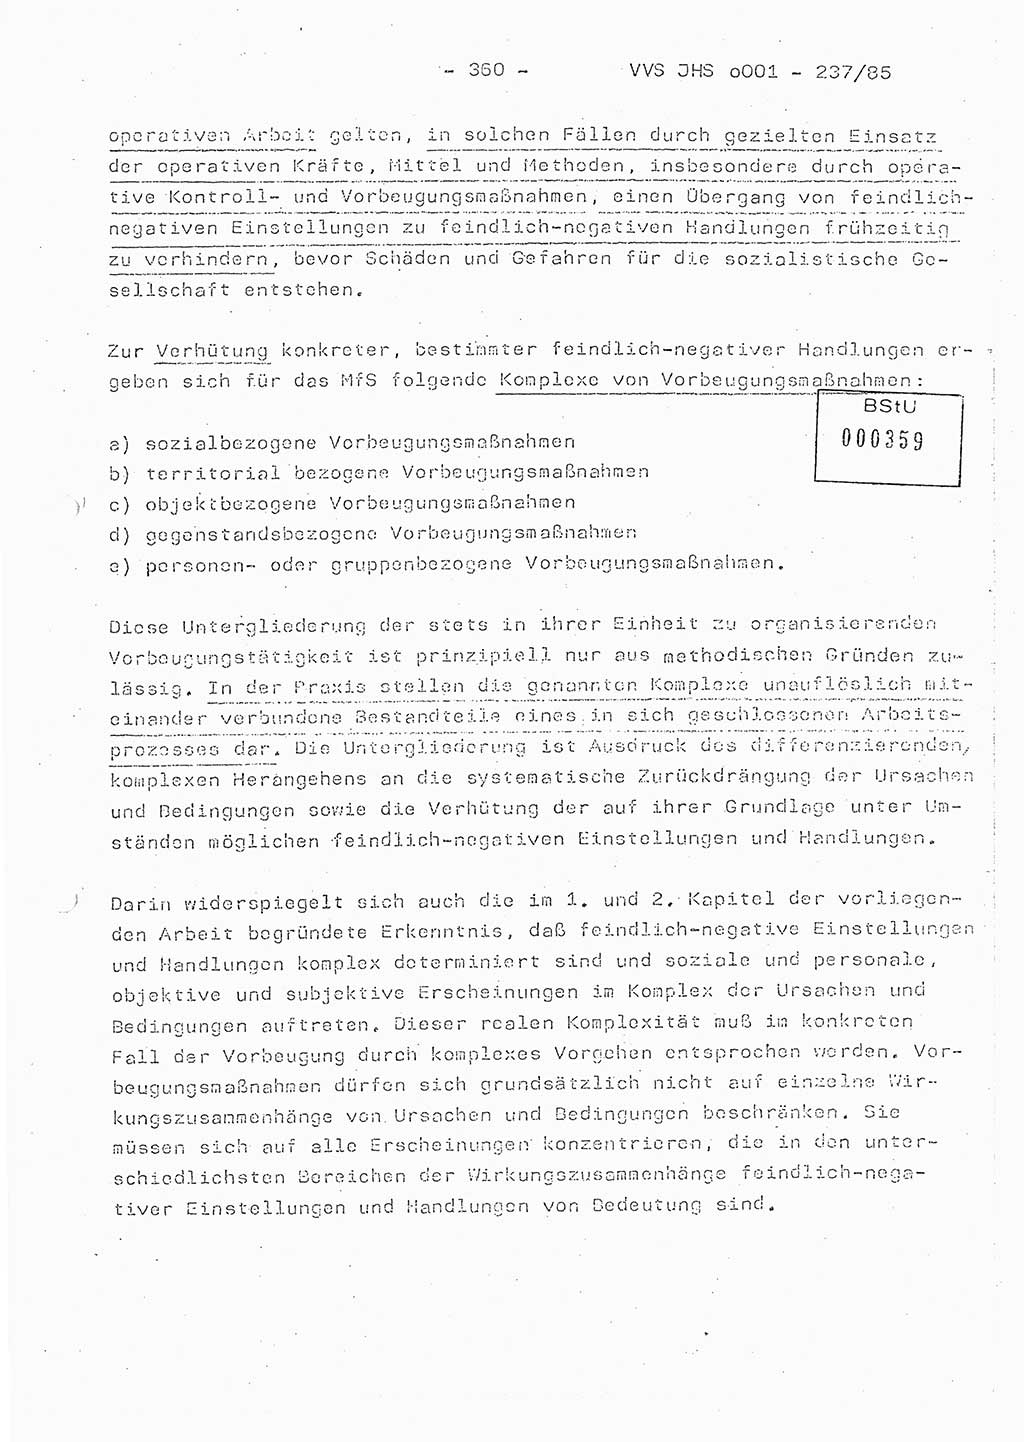 Dissertation Oberstleutnant Peter Jakulski (JHS), Oberstleutnat Christian Rudolph (HA Ⅸ), Major Horst Böttger (ZMD), Major Wolfgang Grüneberg (JHS), Major Albert Meutsch (JHS), Ministerium für Staatssicherheit (MfS) [Deutsche Demokratische Republik (DDR)], Juristische Hochschule (JHS), Vertrauliche Verschlußsache (VVS) o001-237/85, Potsdam 1985, Seite 360 (Diss. MfS DDR JHS VVS o001-237/85 1985, S. 360)